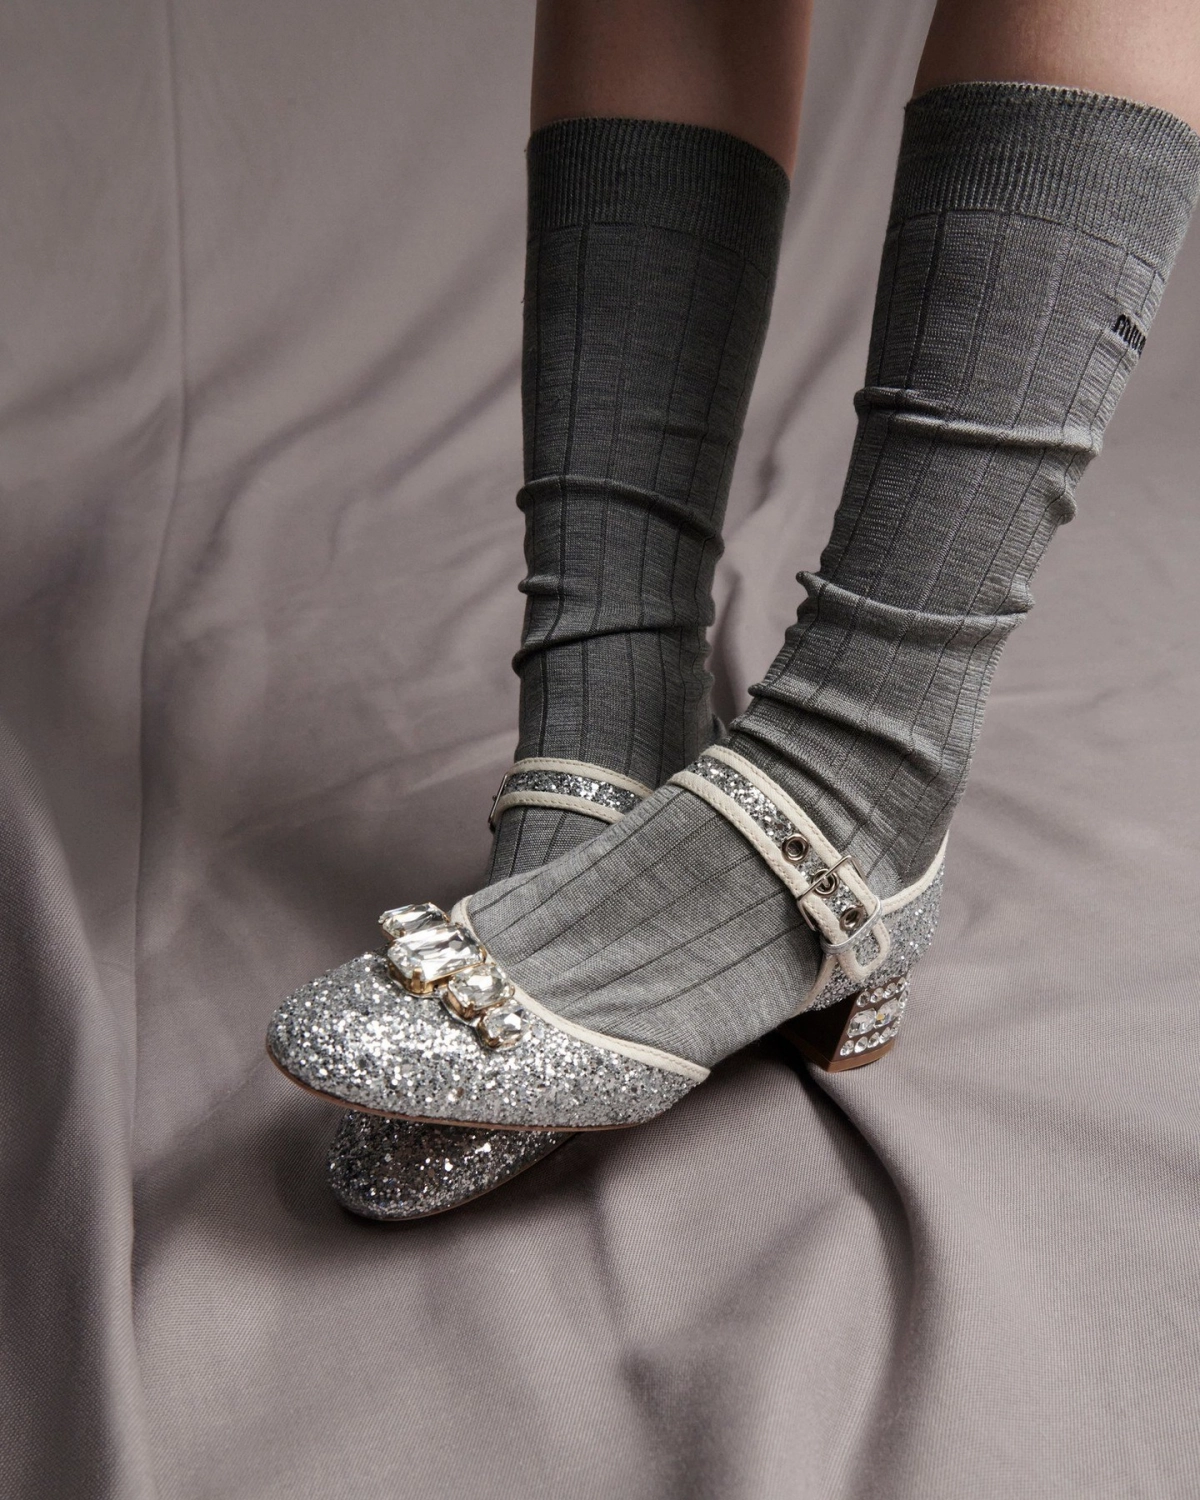 2023 Women's Square Toe Low Heels Sandals Fashion Party Dress Pumps Shoes  Stiletto Casual Slides - Walmart.com